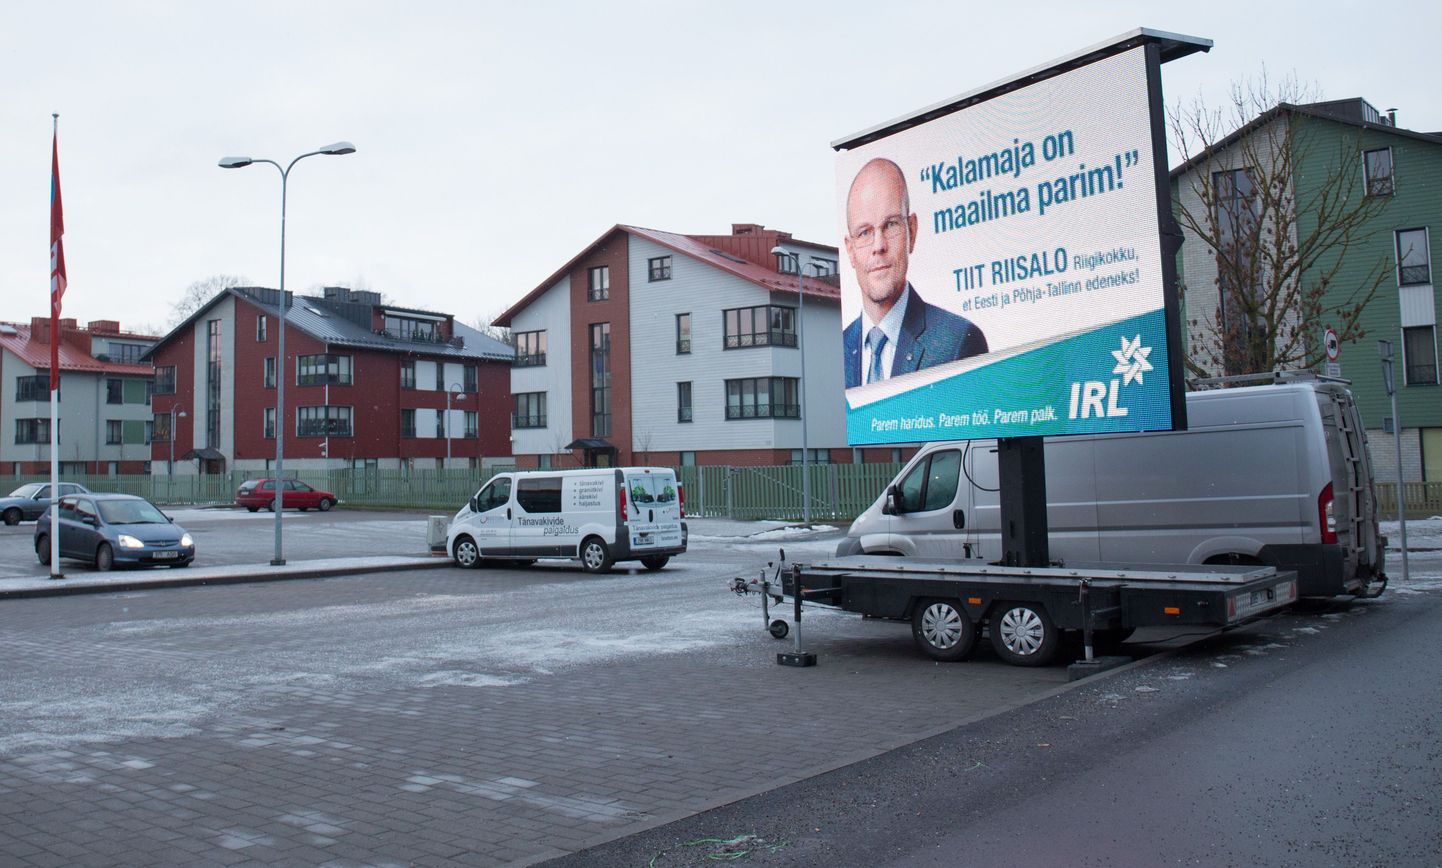 Põhja-Tallinna valitsus süüdistab IRL-i peasekretäri Tiit Riisalot seaduserikkumises.